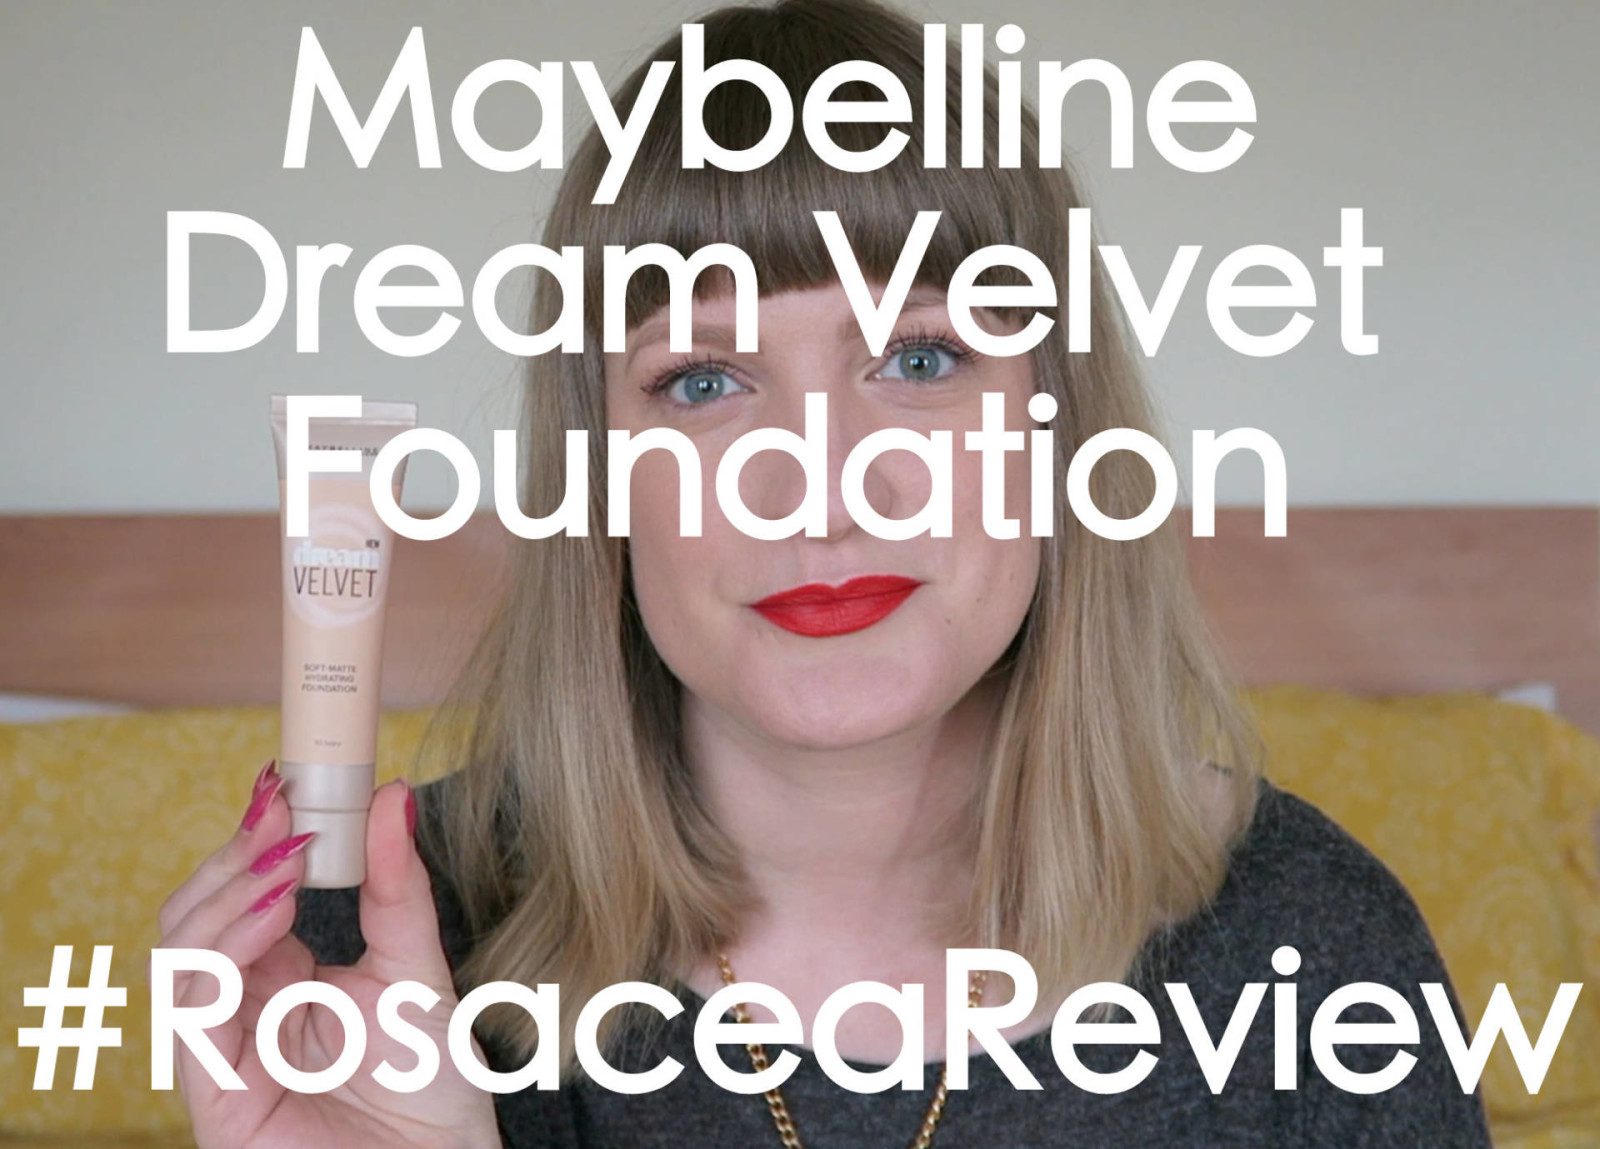 Maybelline Dream Velvet Foundation